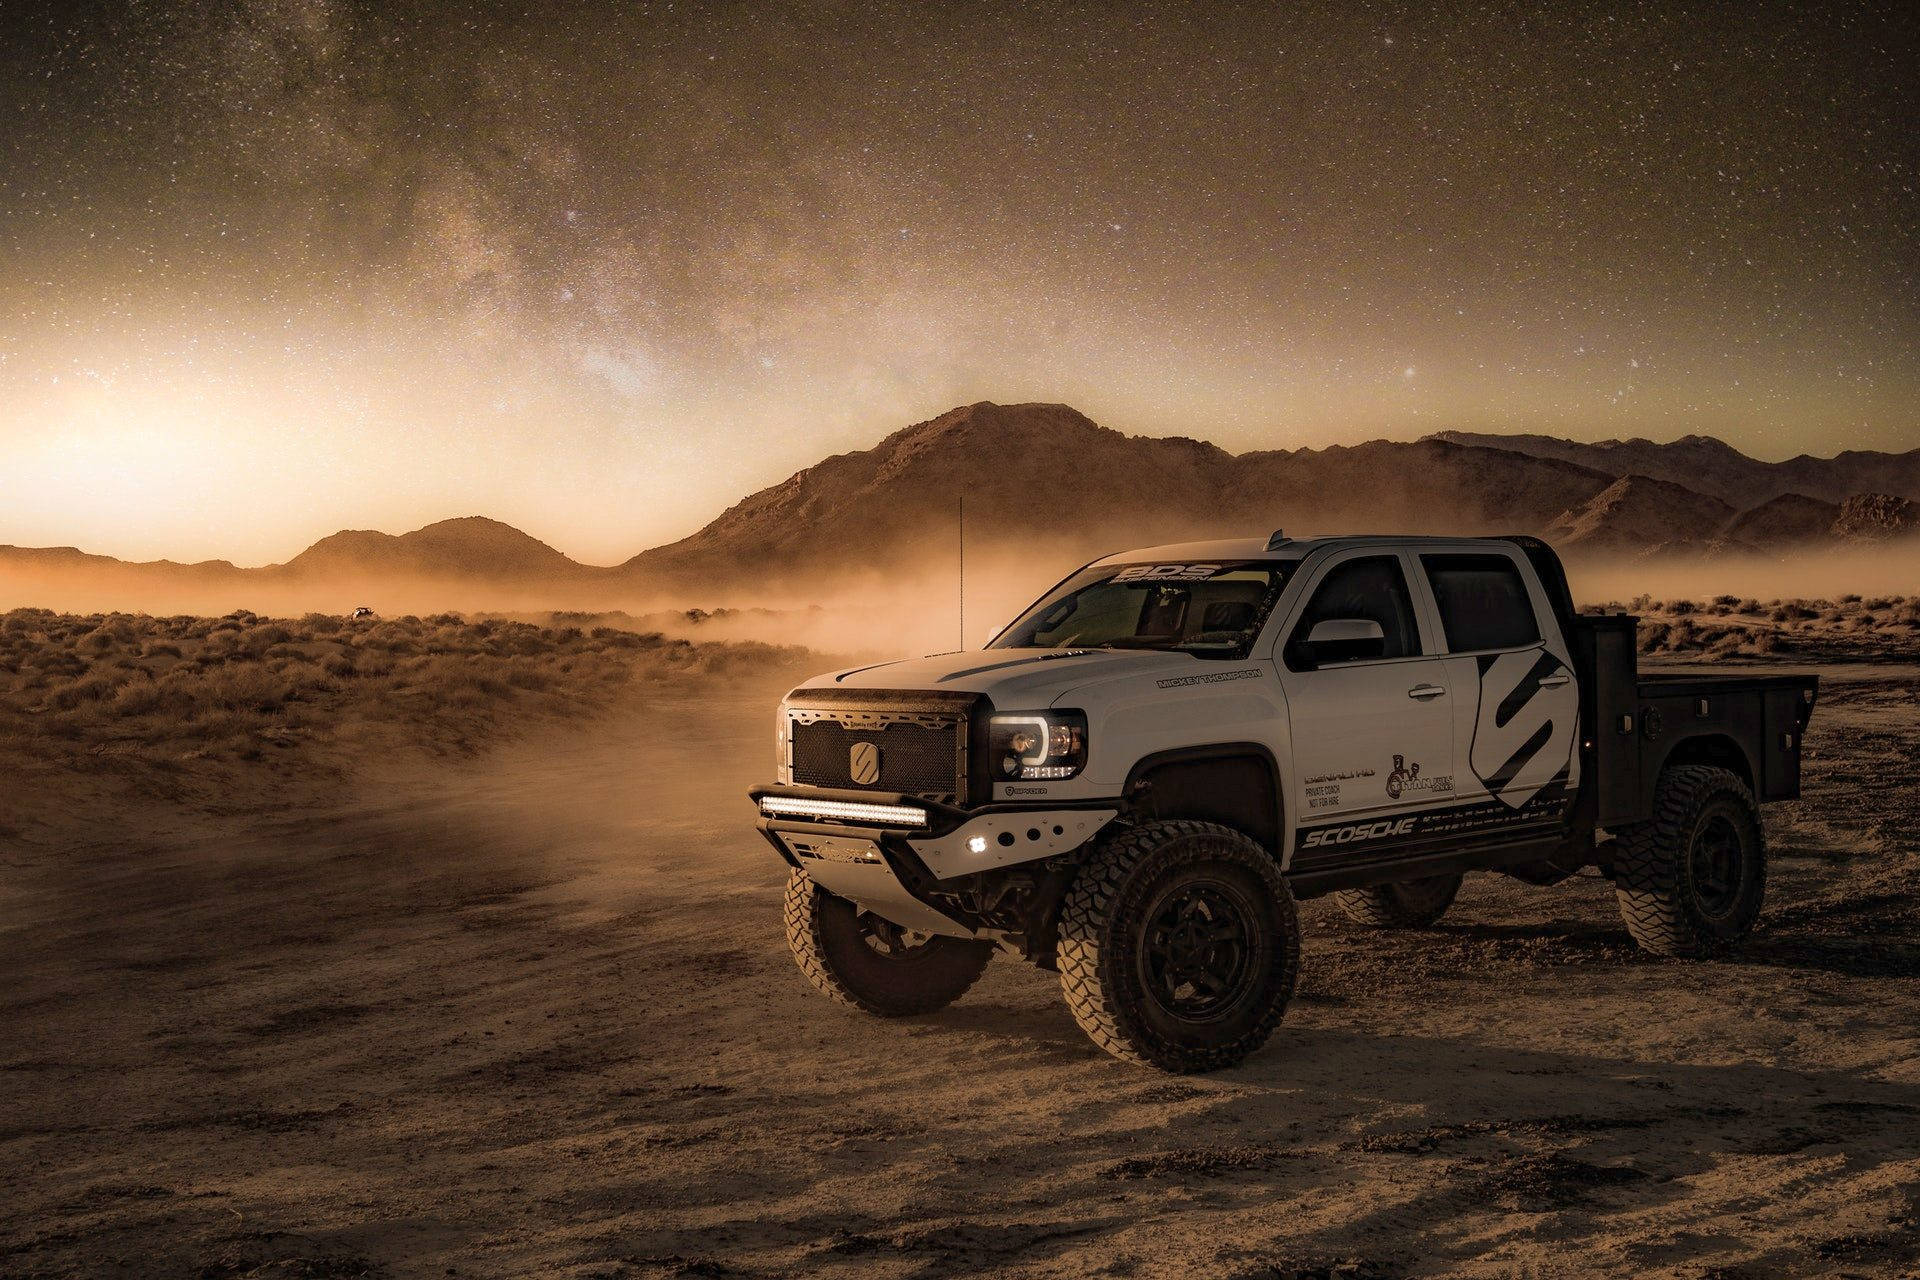 Cool Truck In Smokey Desert